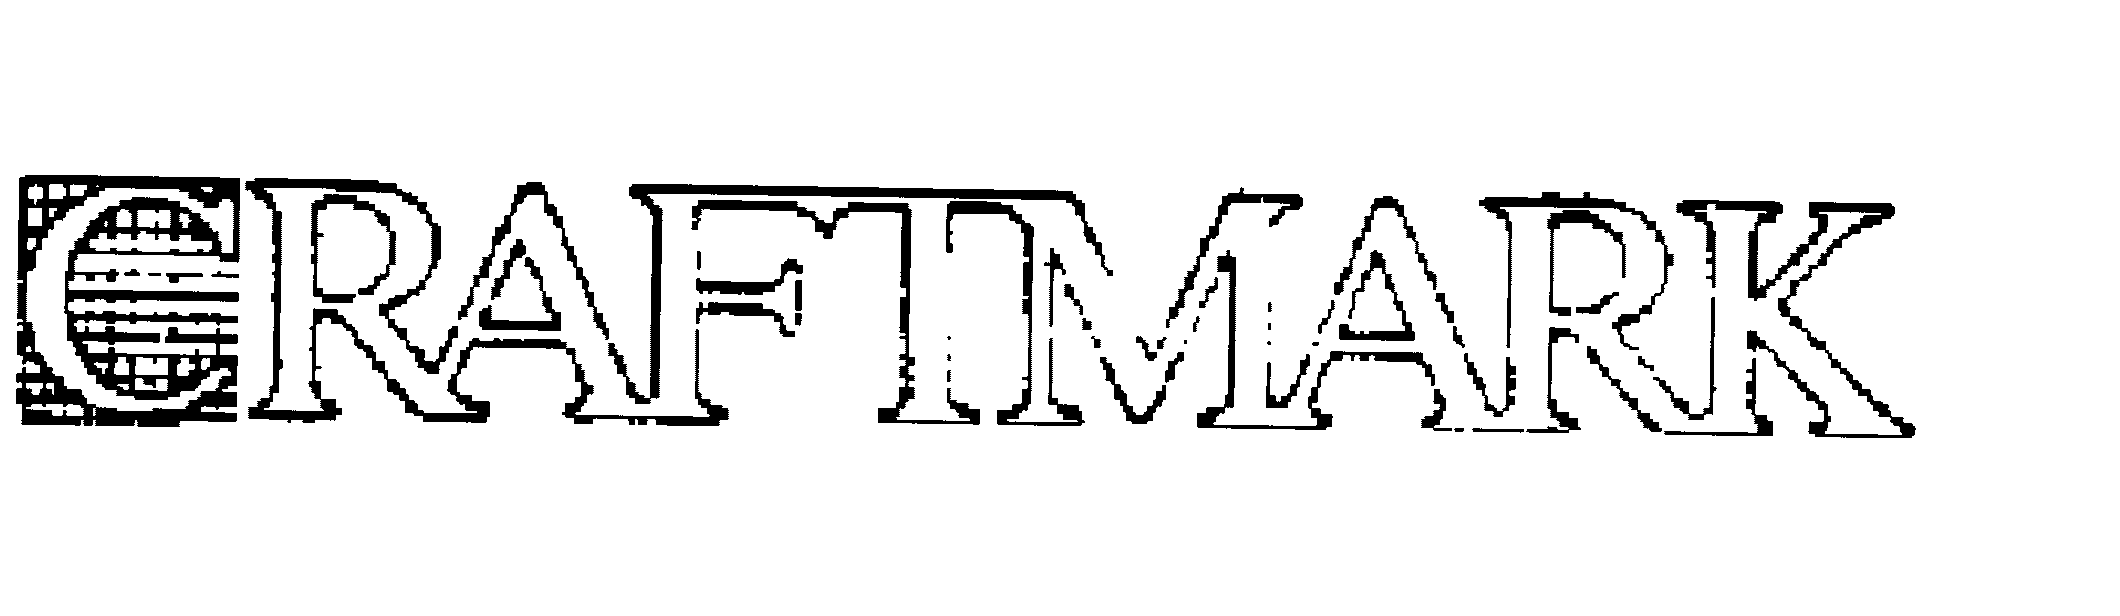 Trademark Logo CRAFTMARK